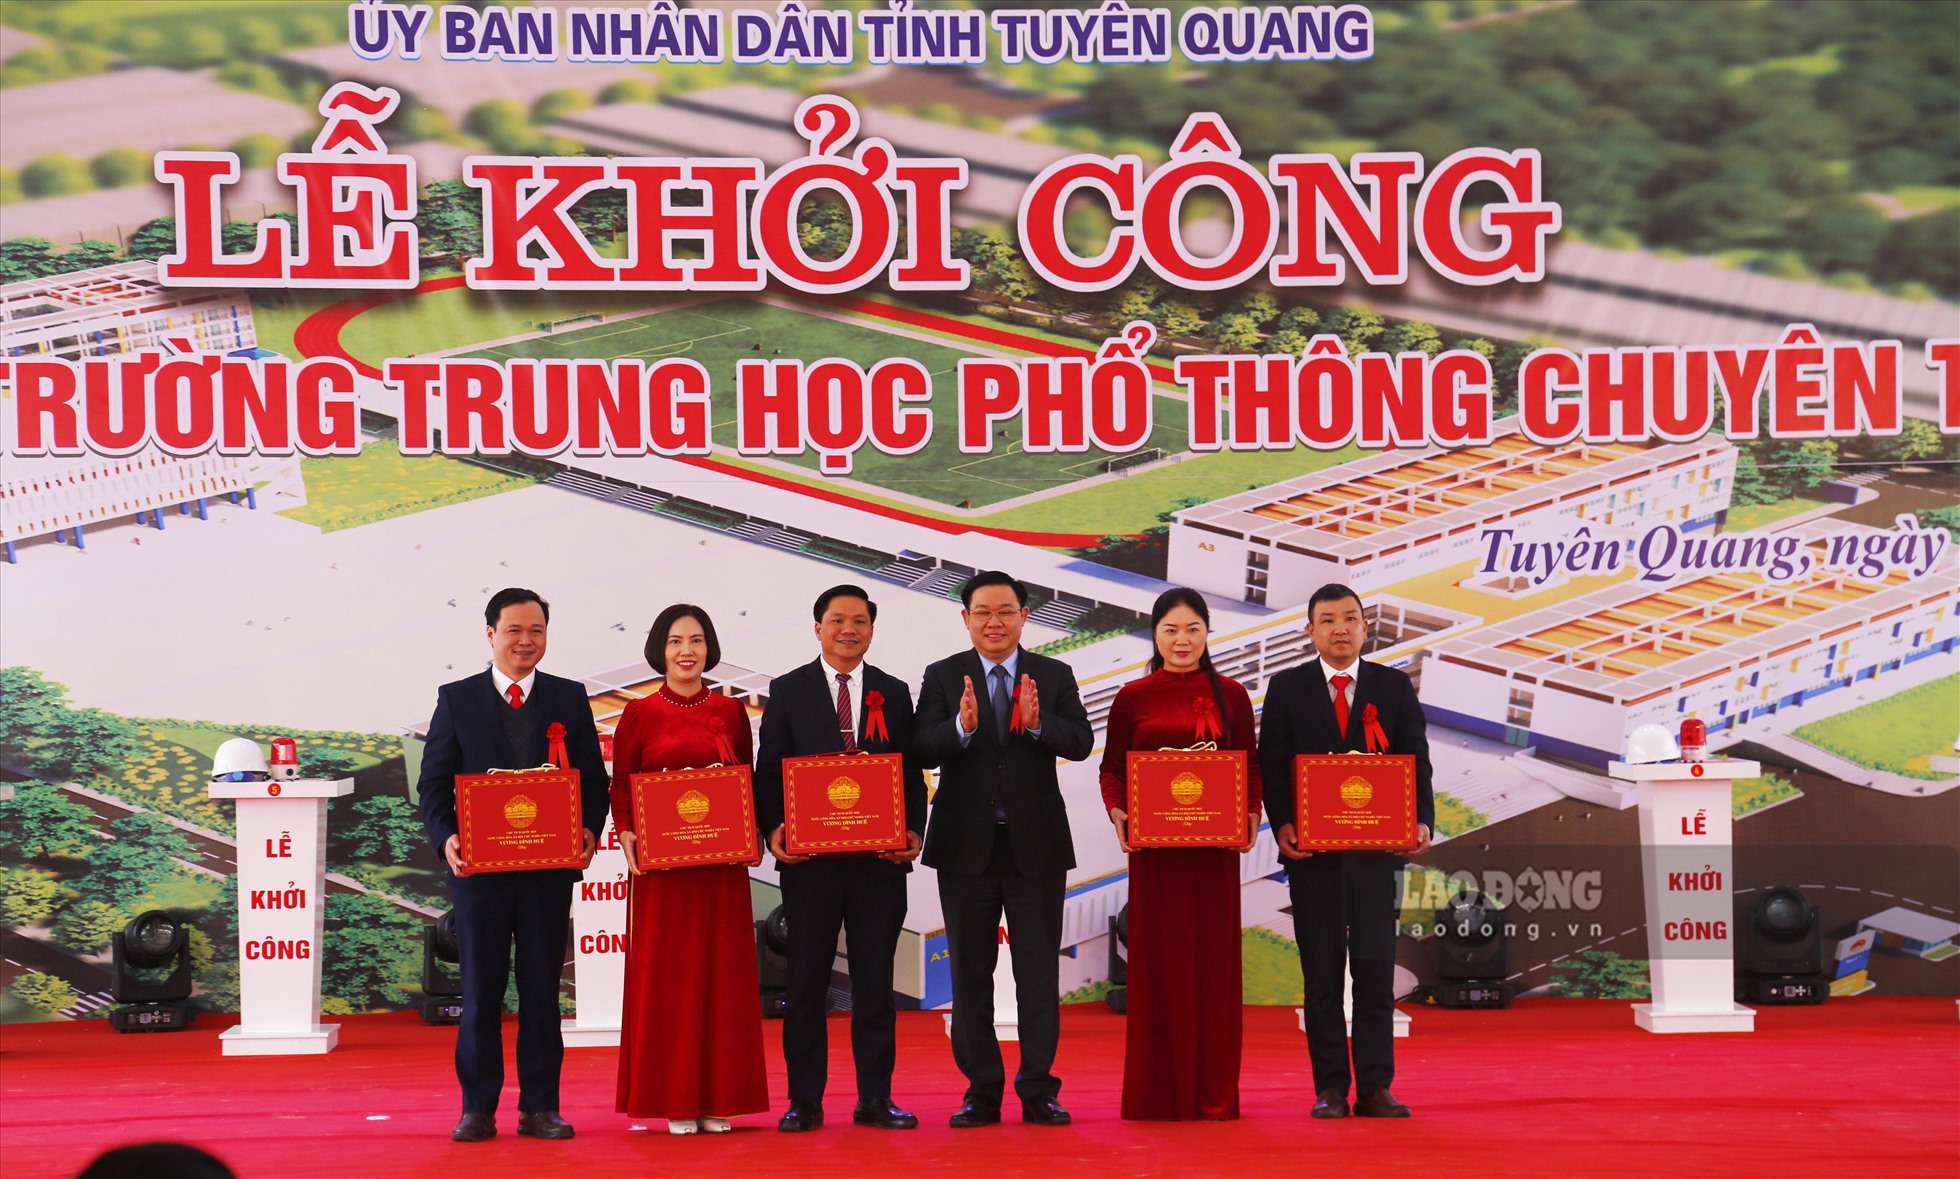 Chủ tịch Quốc hội Vương Đình Huệ tặng quà và thiếp chúc mừng lãnh đạo Trường THPT chuyên Tuyên Quang.